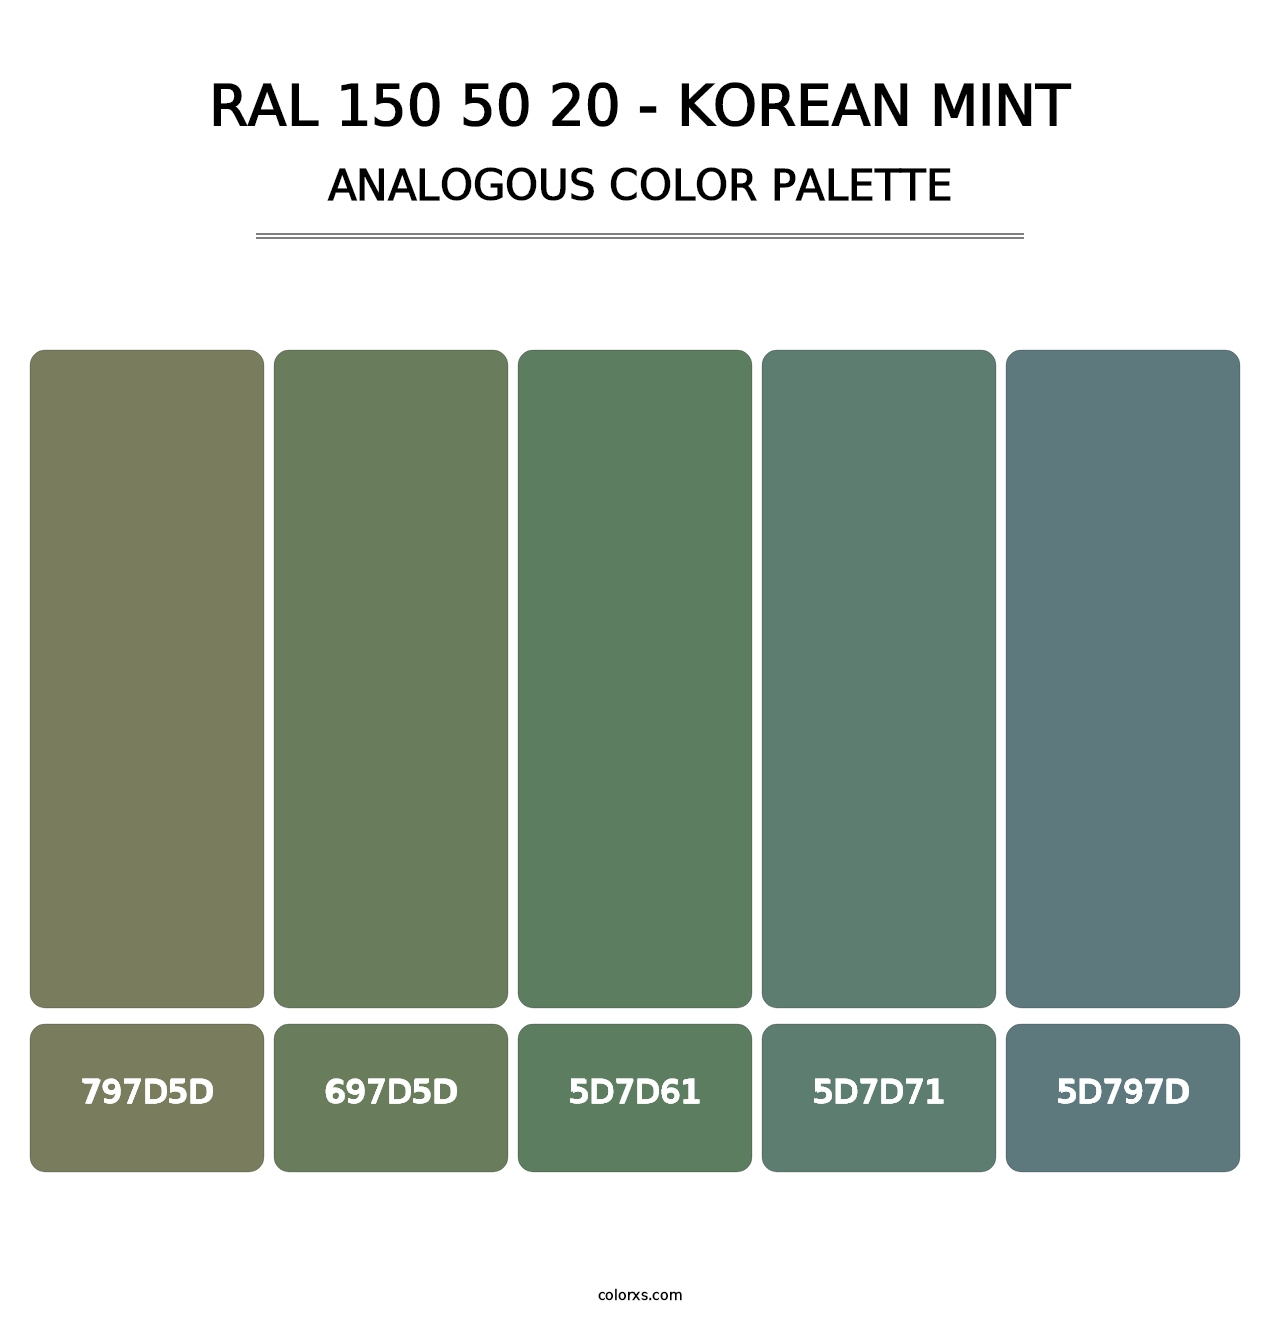 RAL 150 50 20 - Korean Mint - Analogous Color Palette